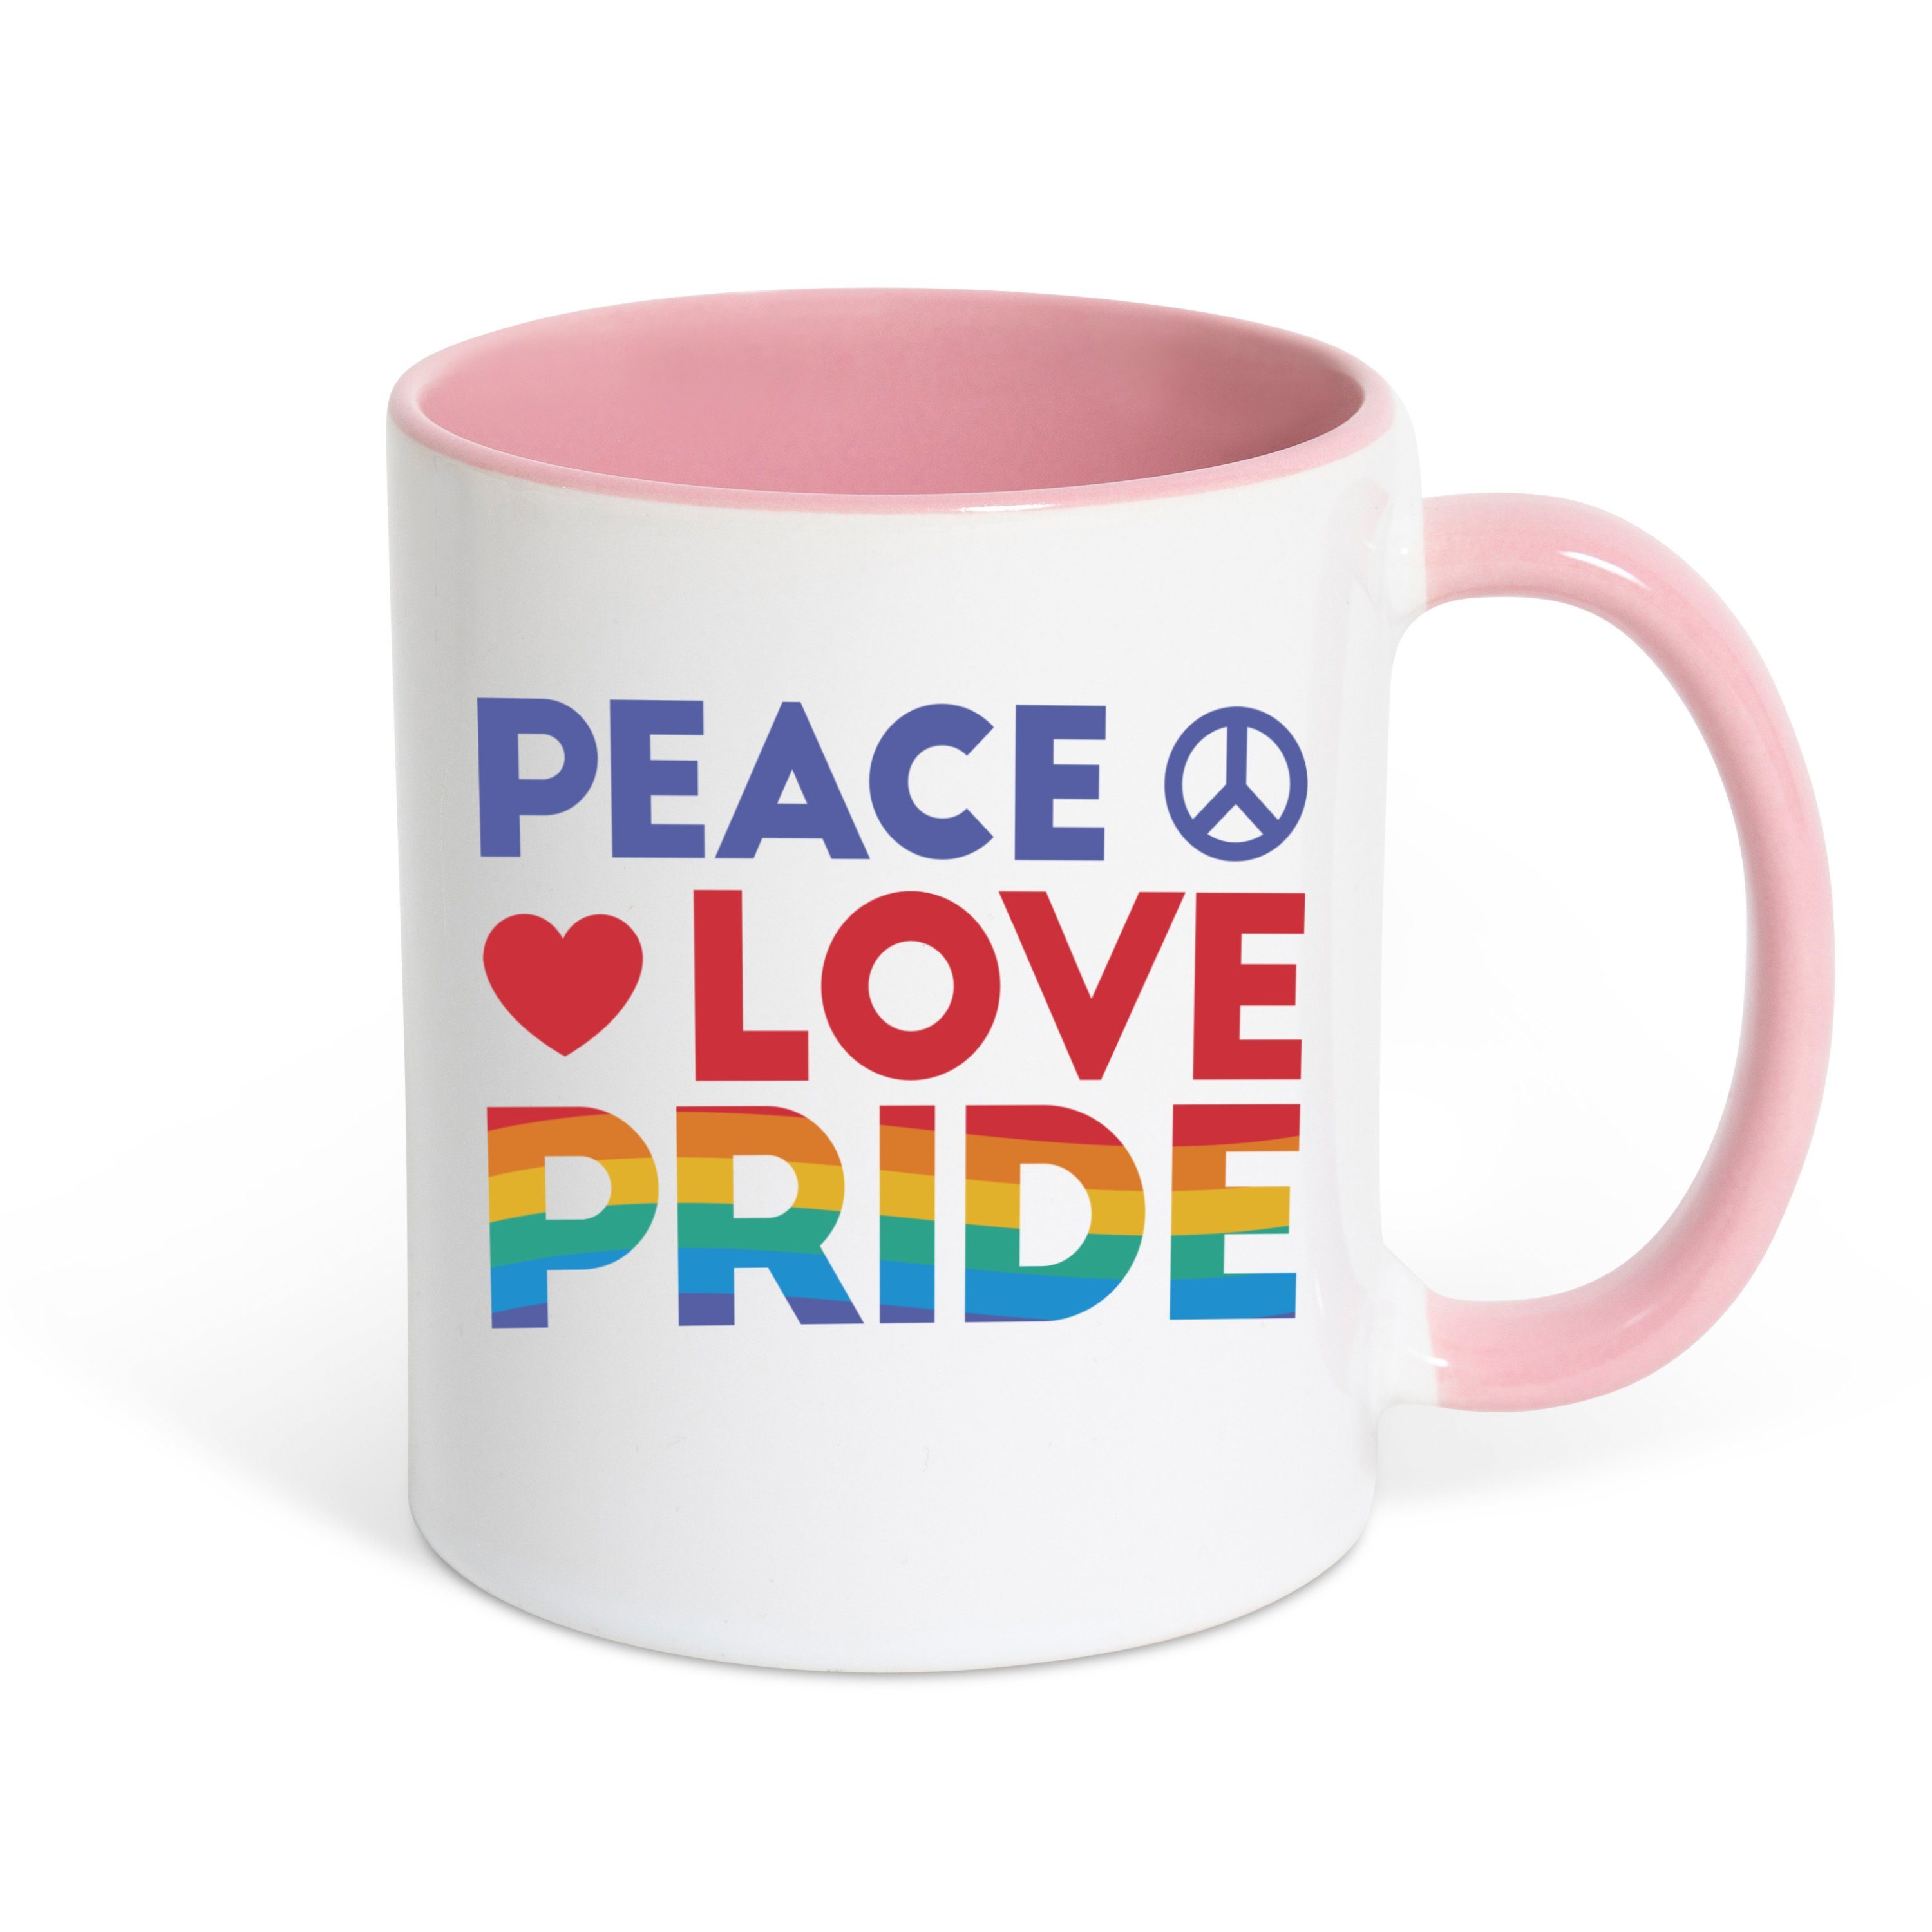 Peace Kaffeetasse Geschenk, trendigem Tasse mit Youth Designz Motiv Keramik, Love Weiss/Rosa Pride